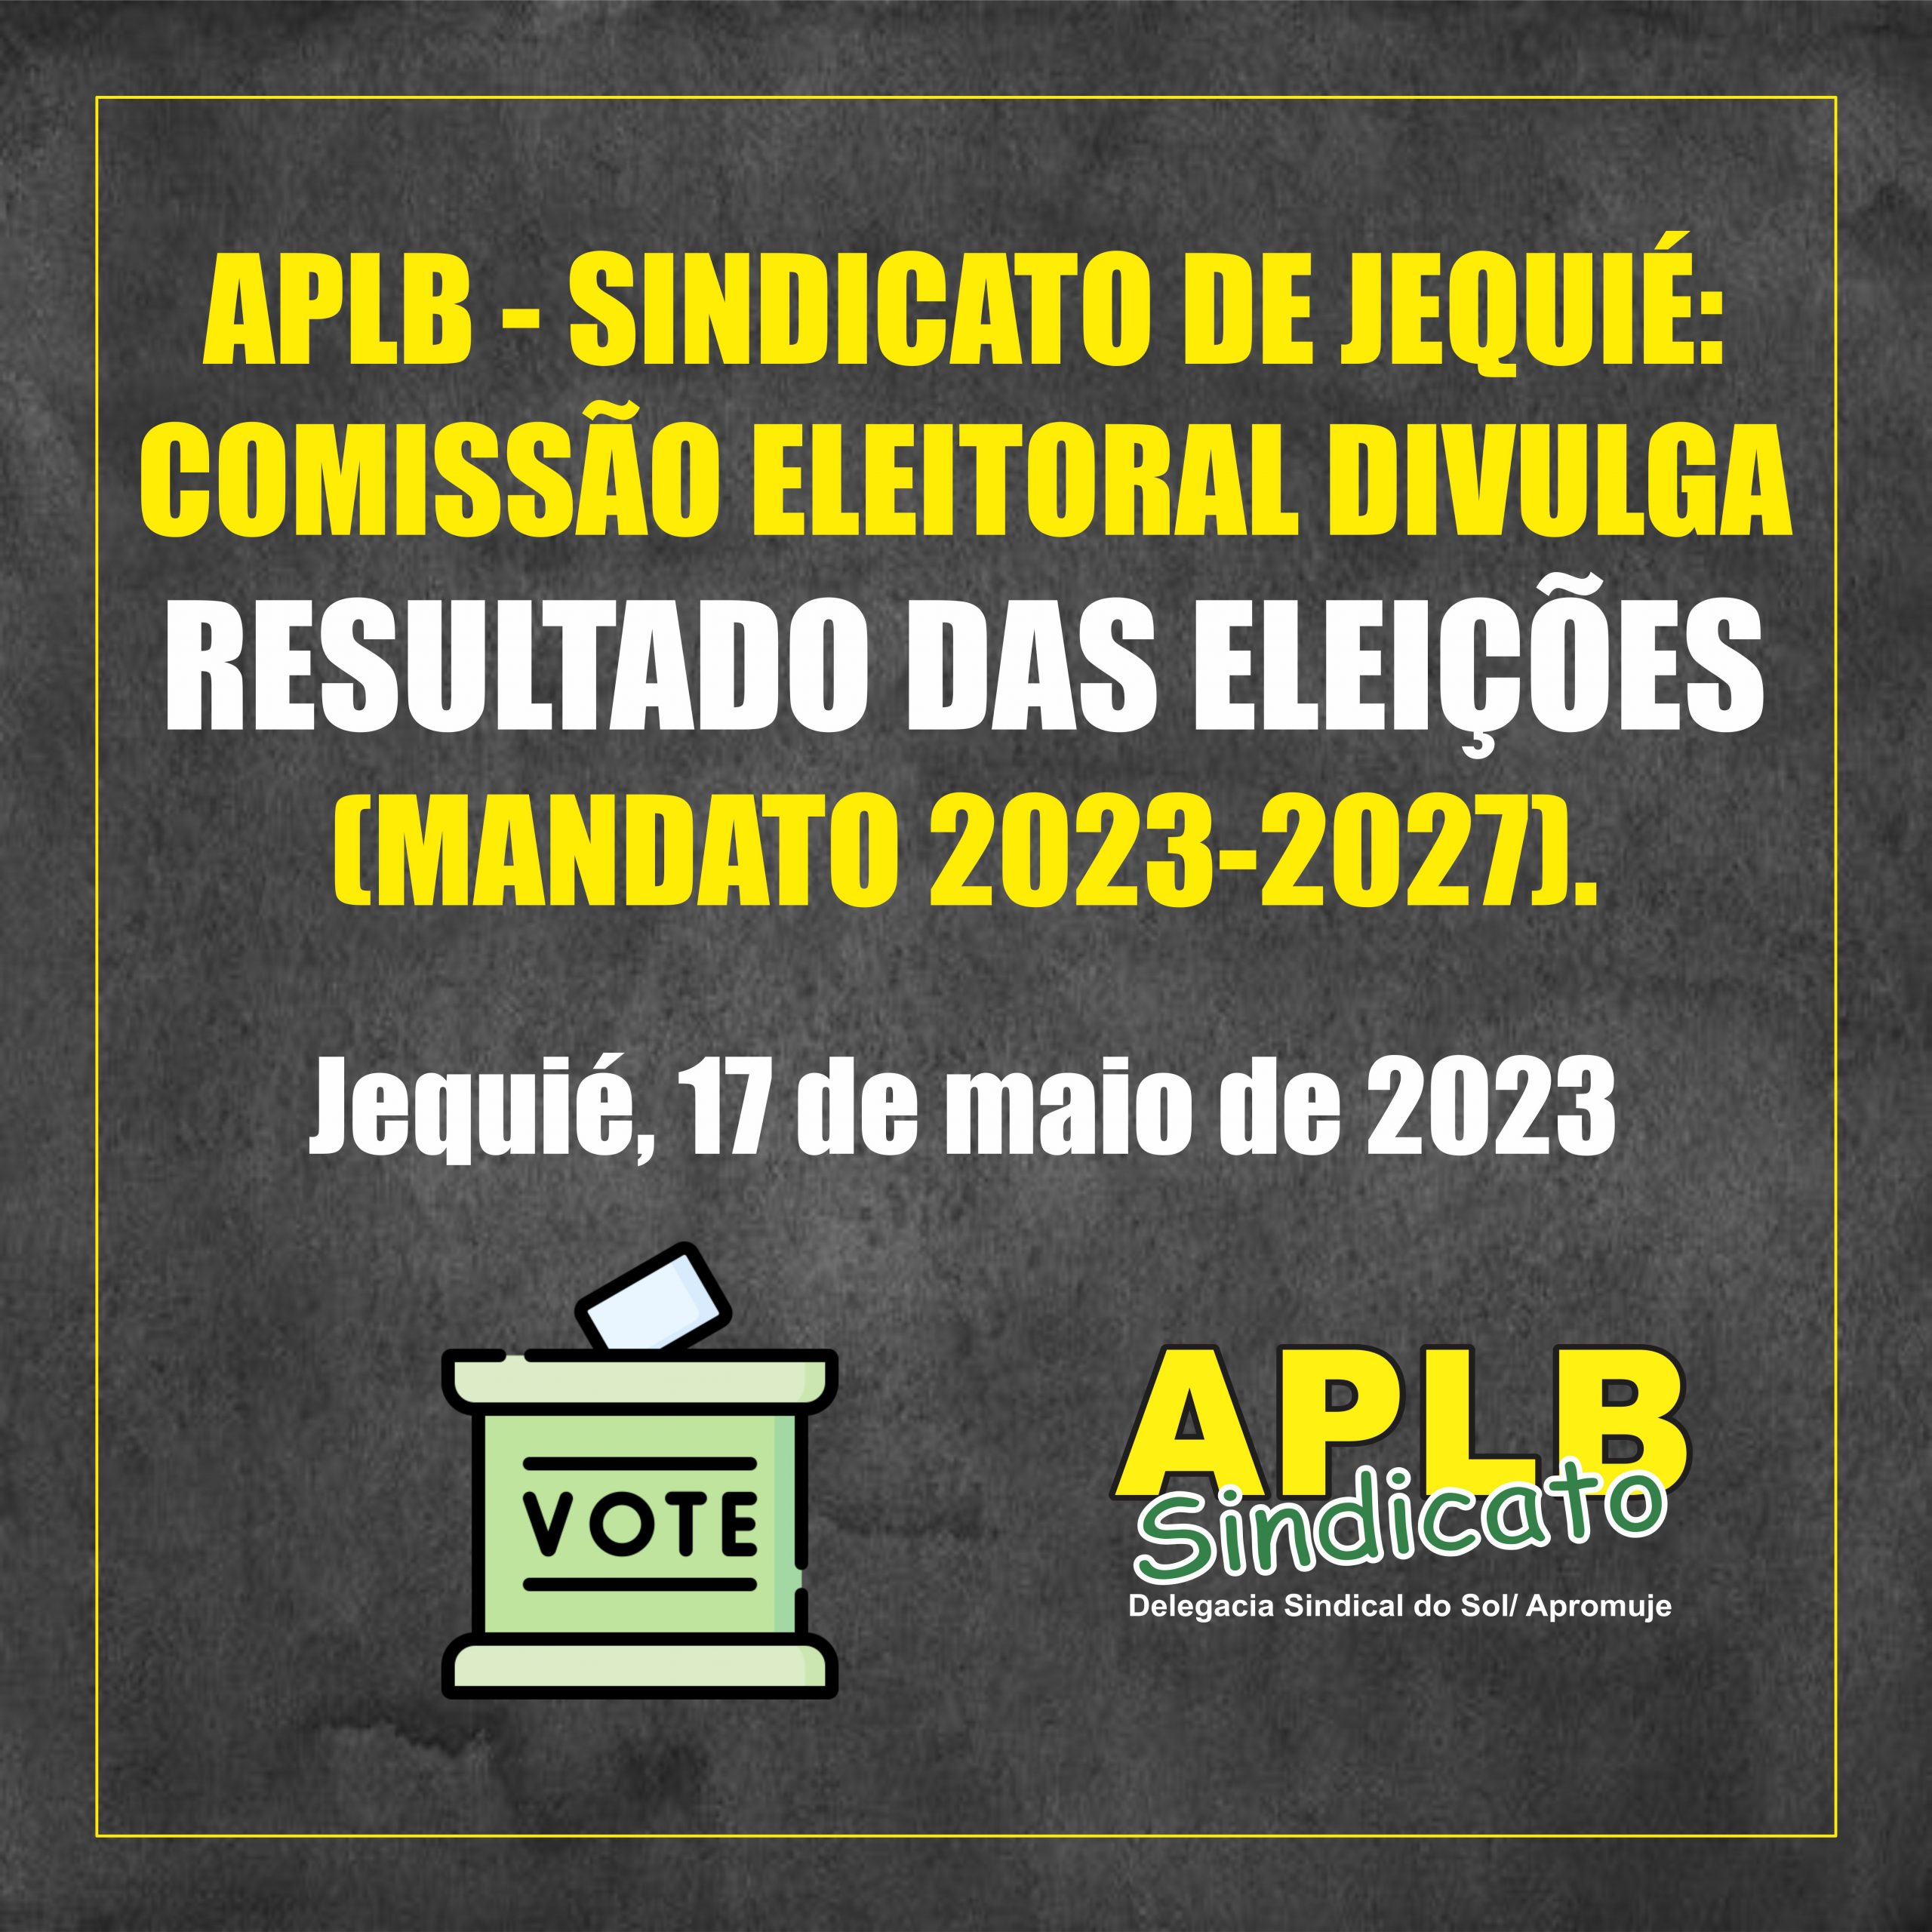 APLB – Sindicato de Jequié: Comissão eleitoral divulga resultado das eleições (mandato 2023-2027).